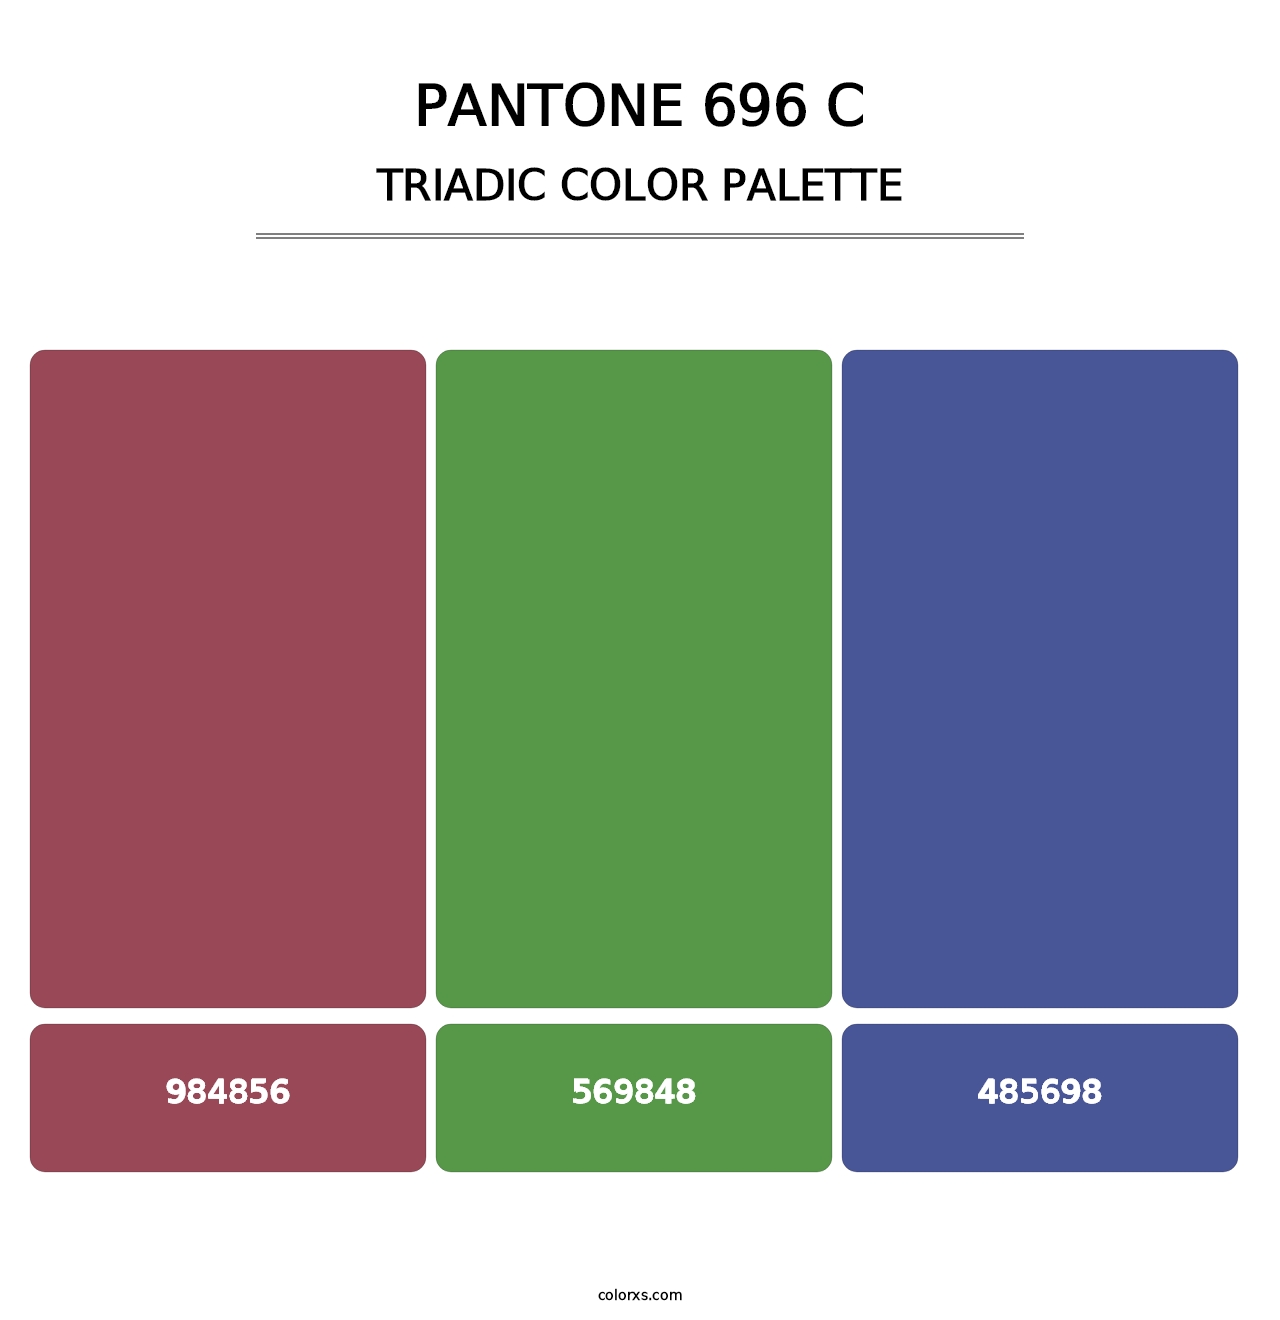 PANTONE 696 C - Triadic Color Palette